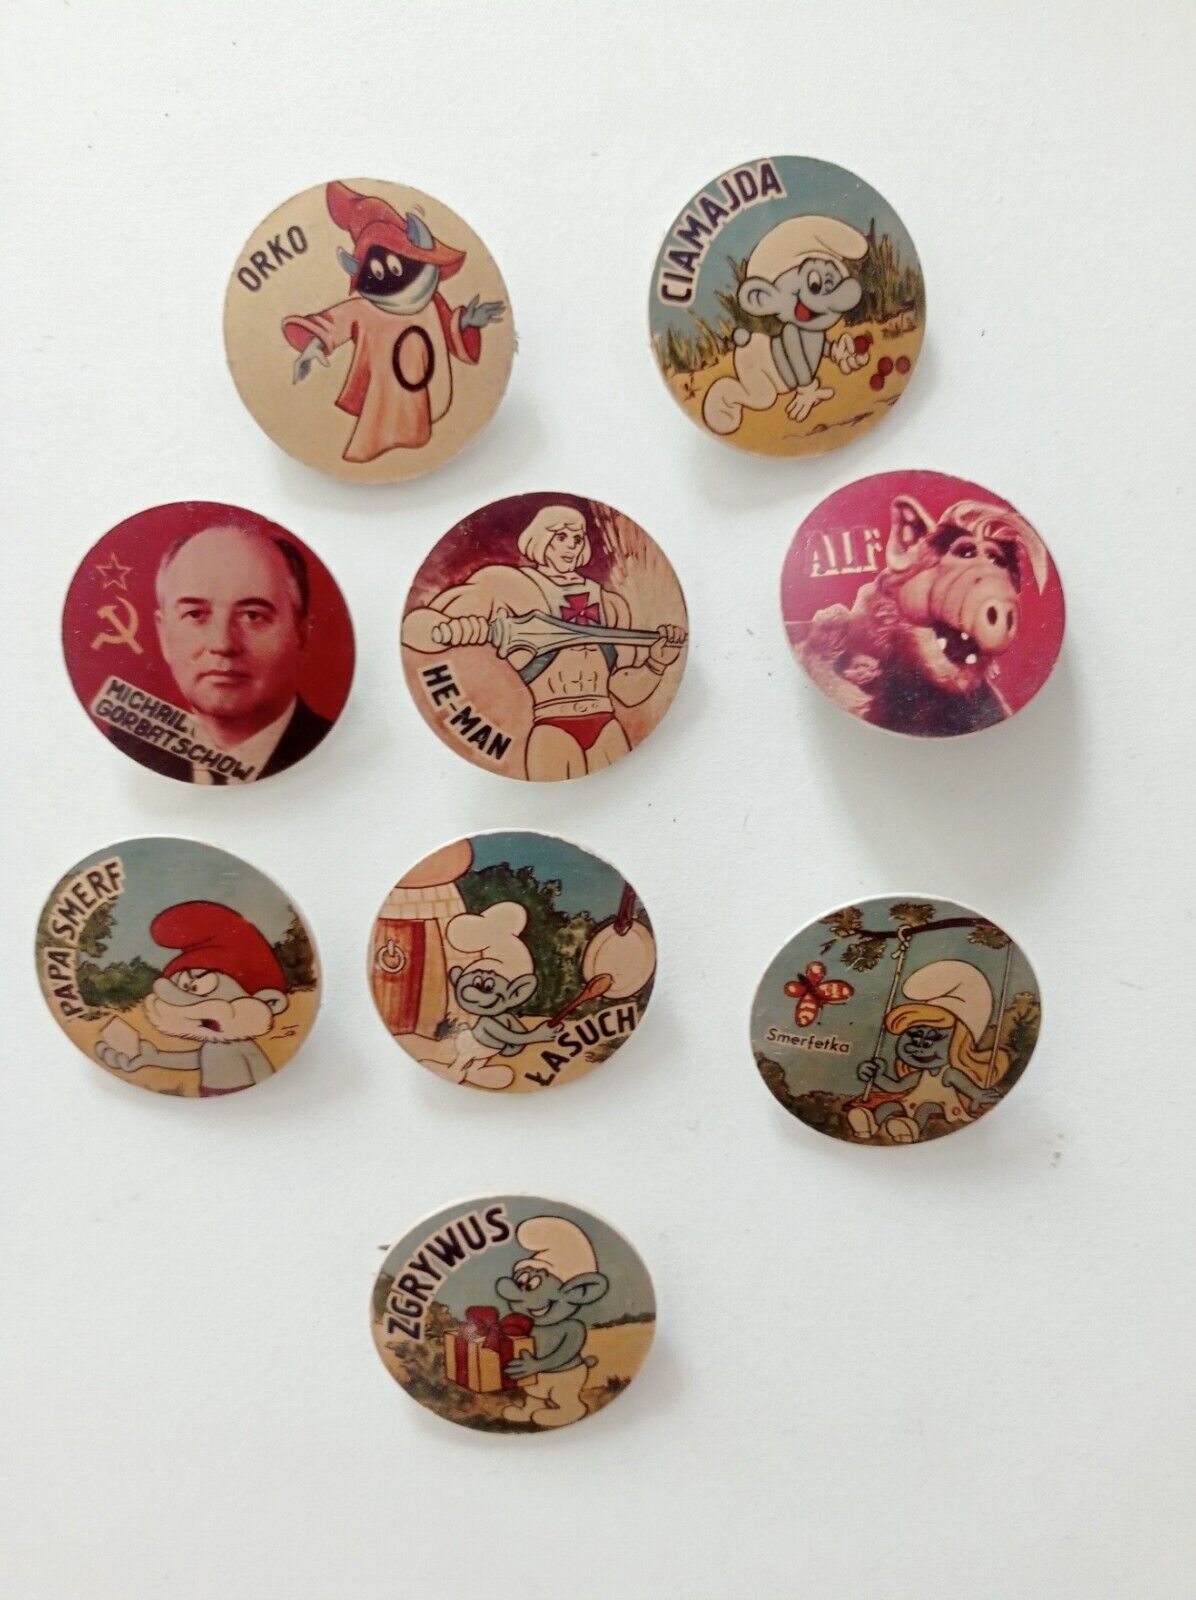 Vintage ex USSR/POLAND badge lot of 9